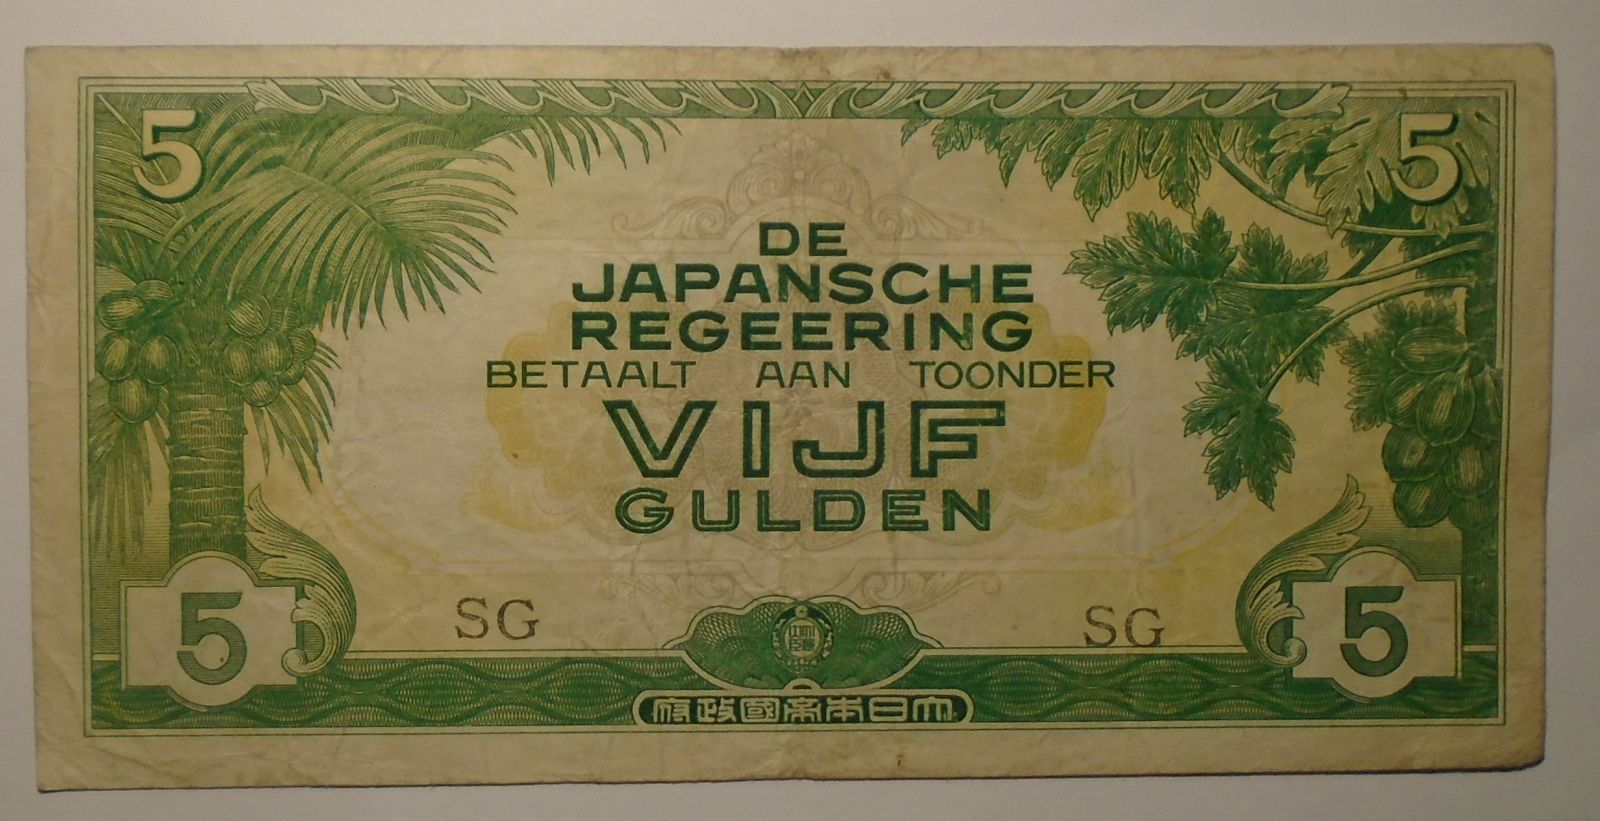 Indočína - Jap. oupace 5 Gulden 1942